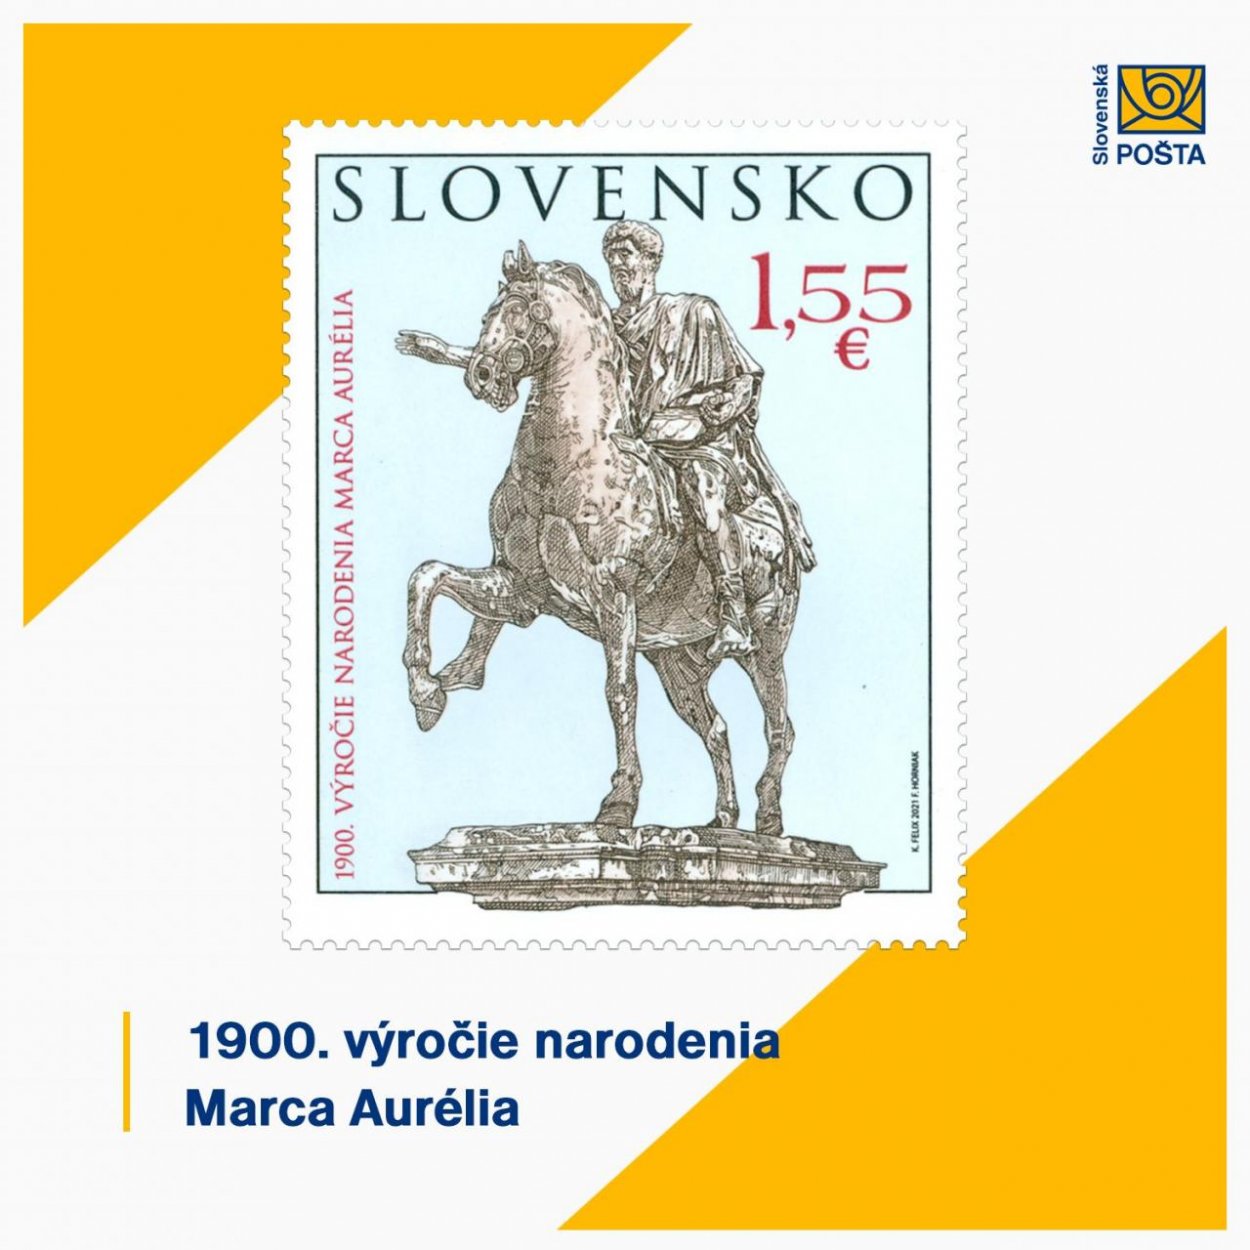 Rímskeho cisára, ktorý bojoval na Slovensku s barbarmi, si uctí Slovenská pošta známkou